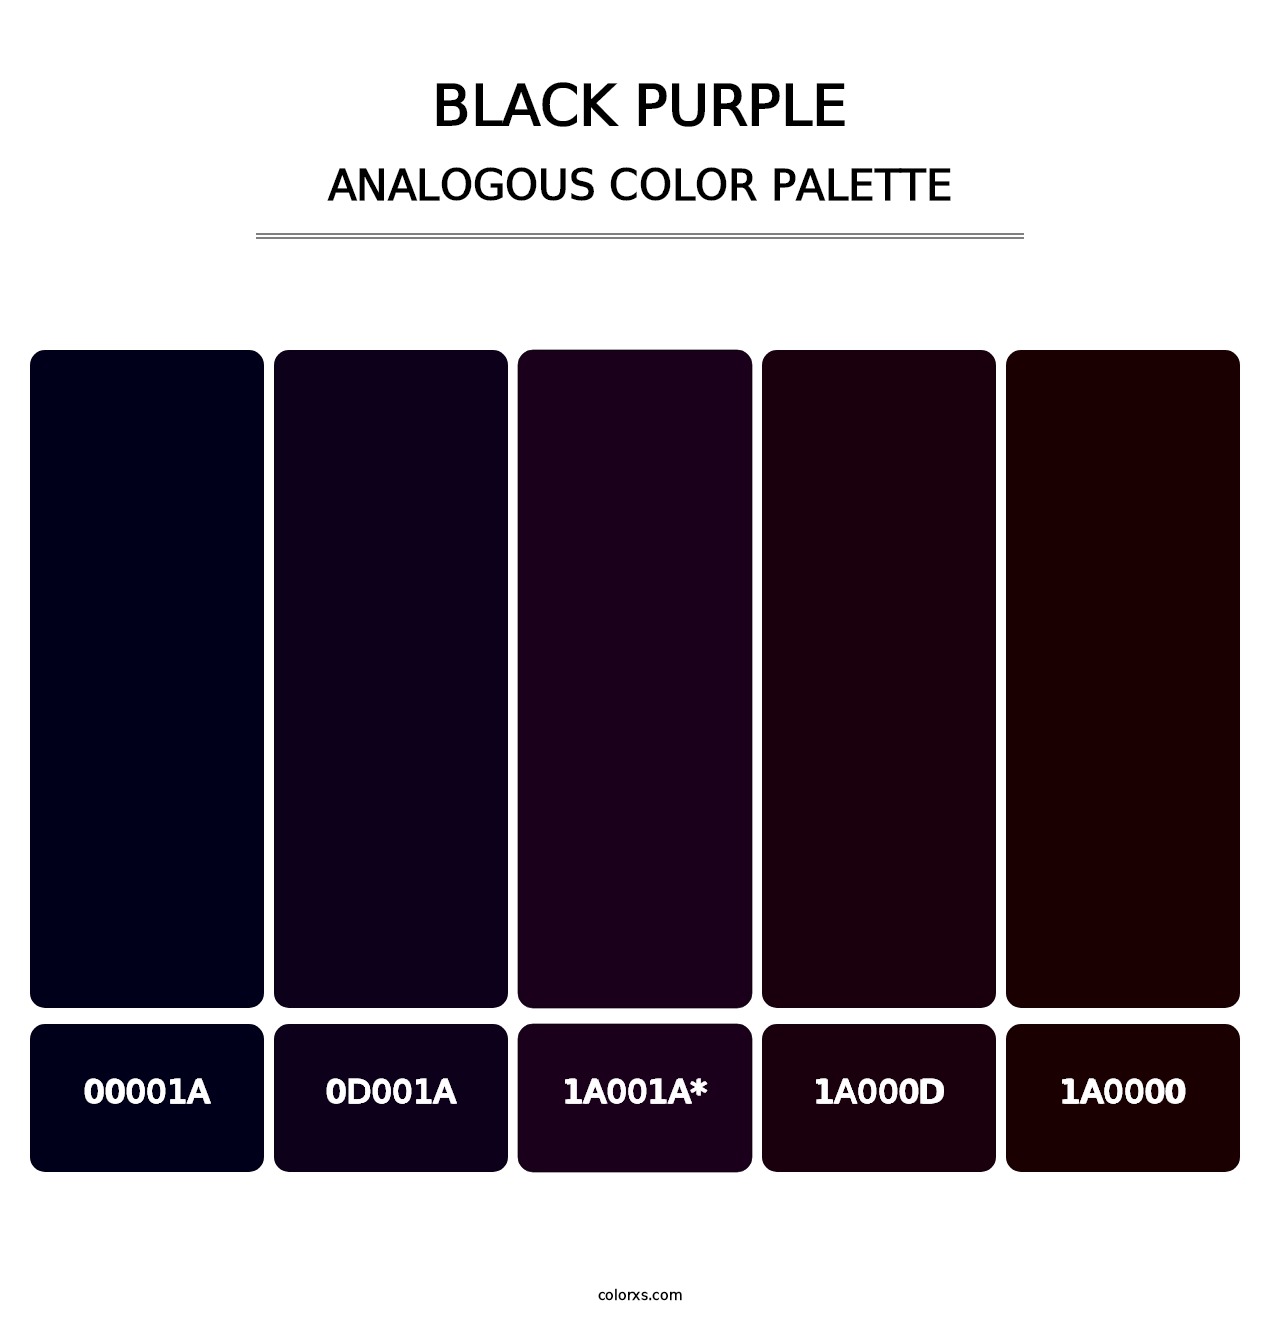 Black Purple - Analogous Color Palette